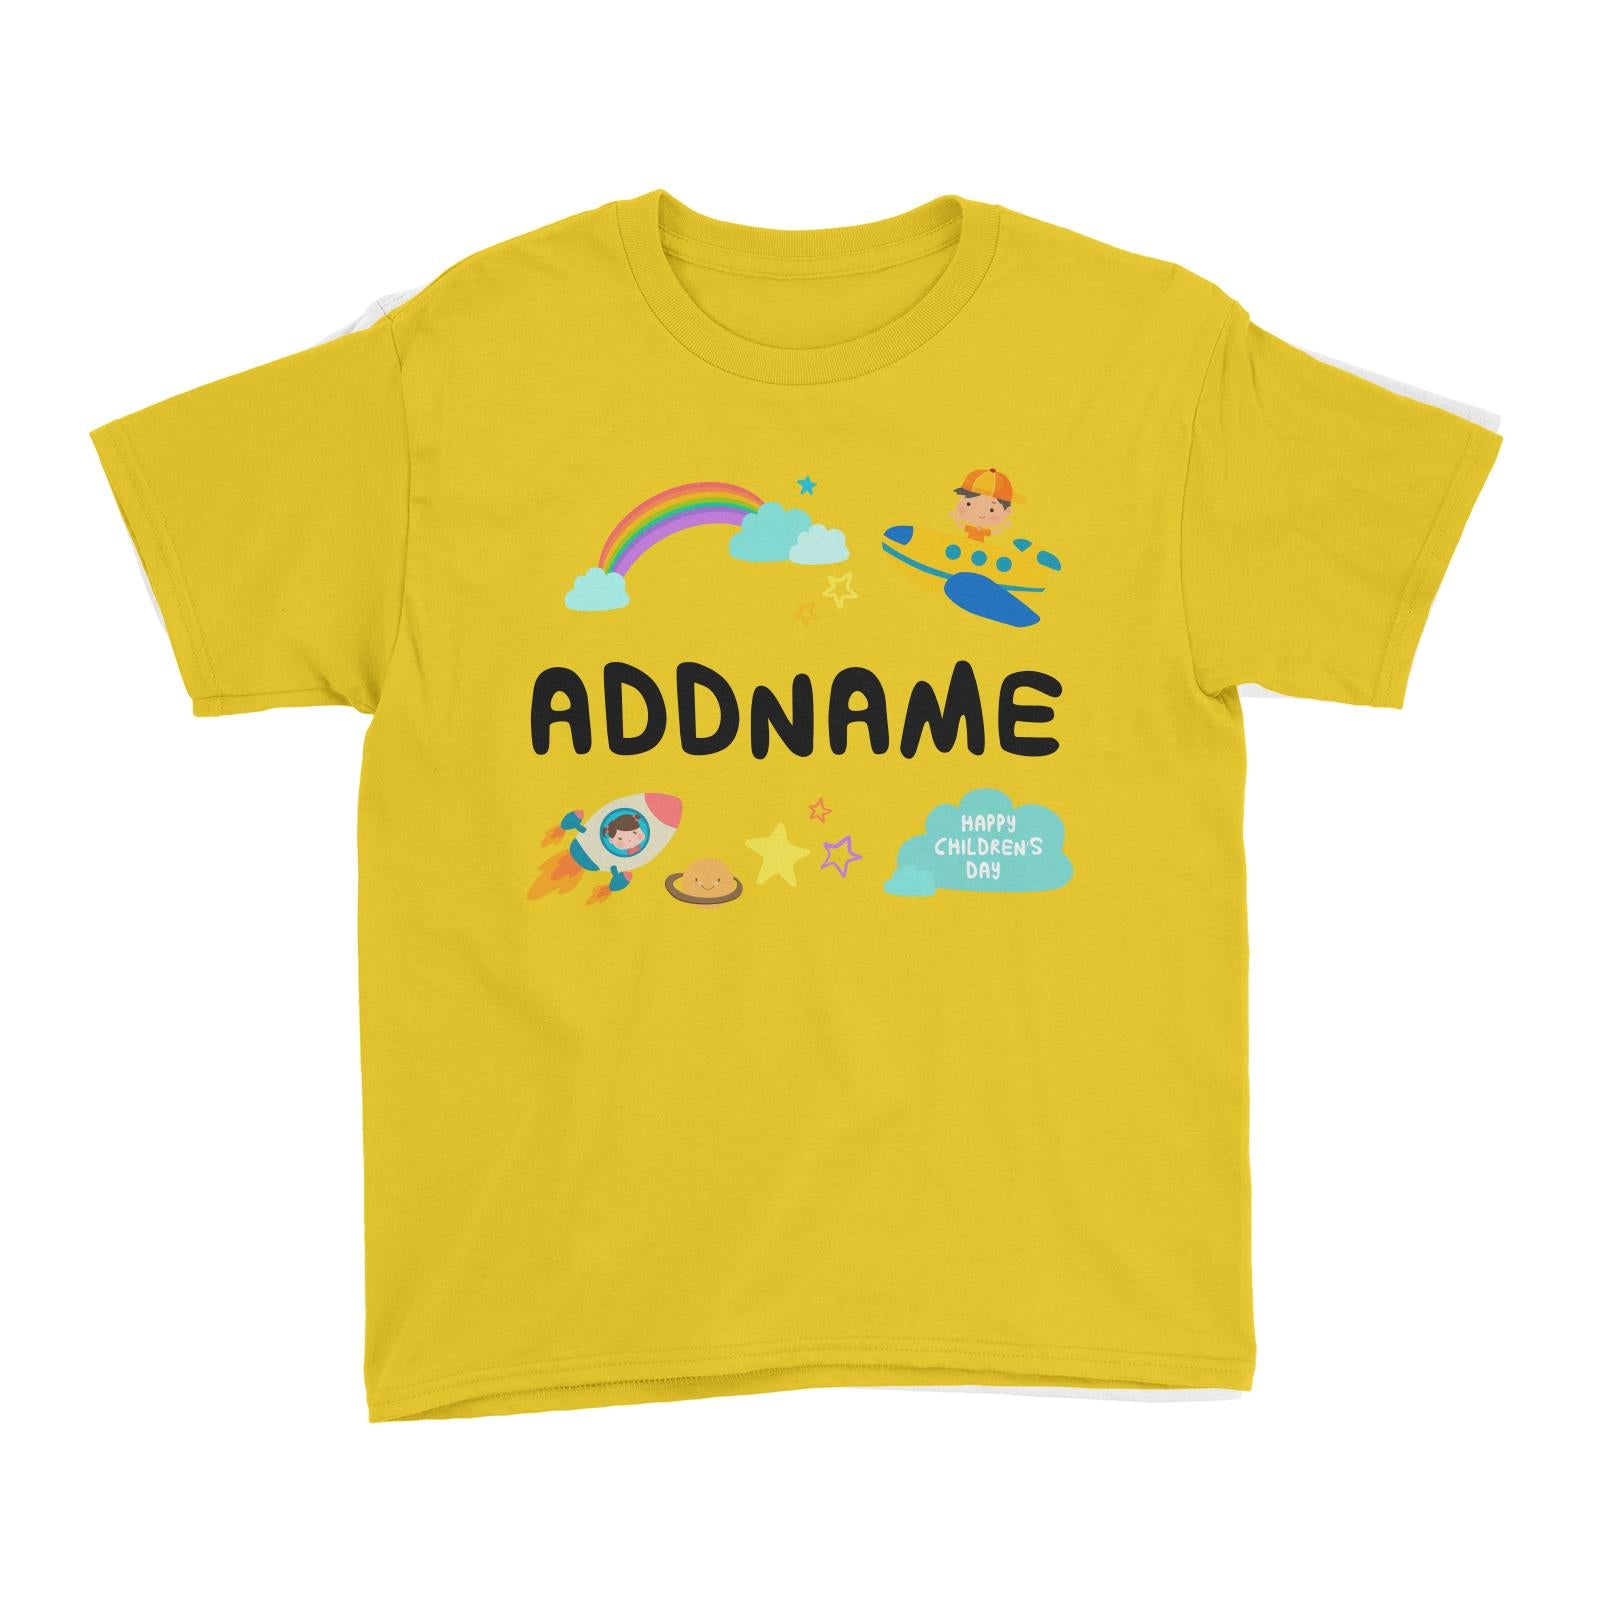 Children's Day Gift Series Adventure Boy Space Rainbow Addname Kid's T-Shirt